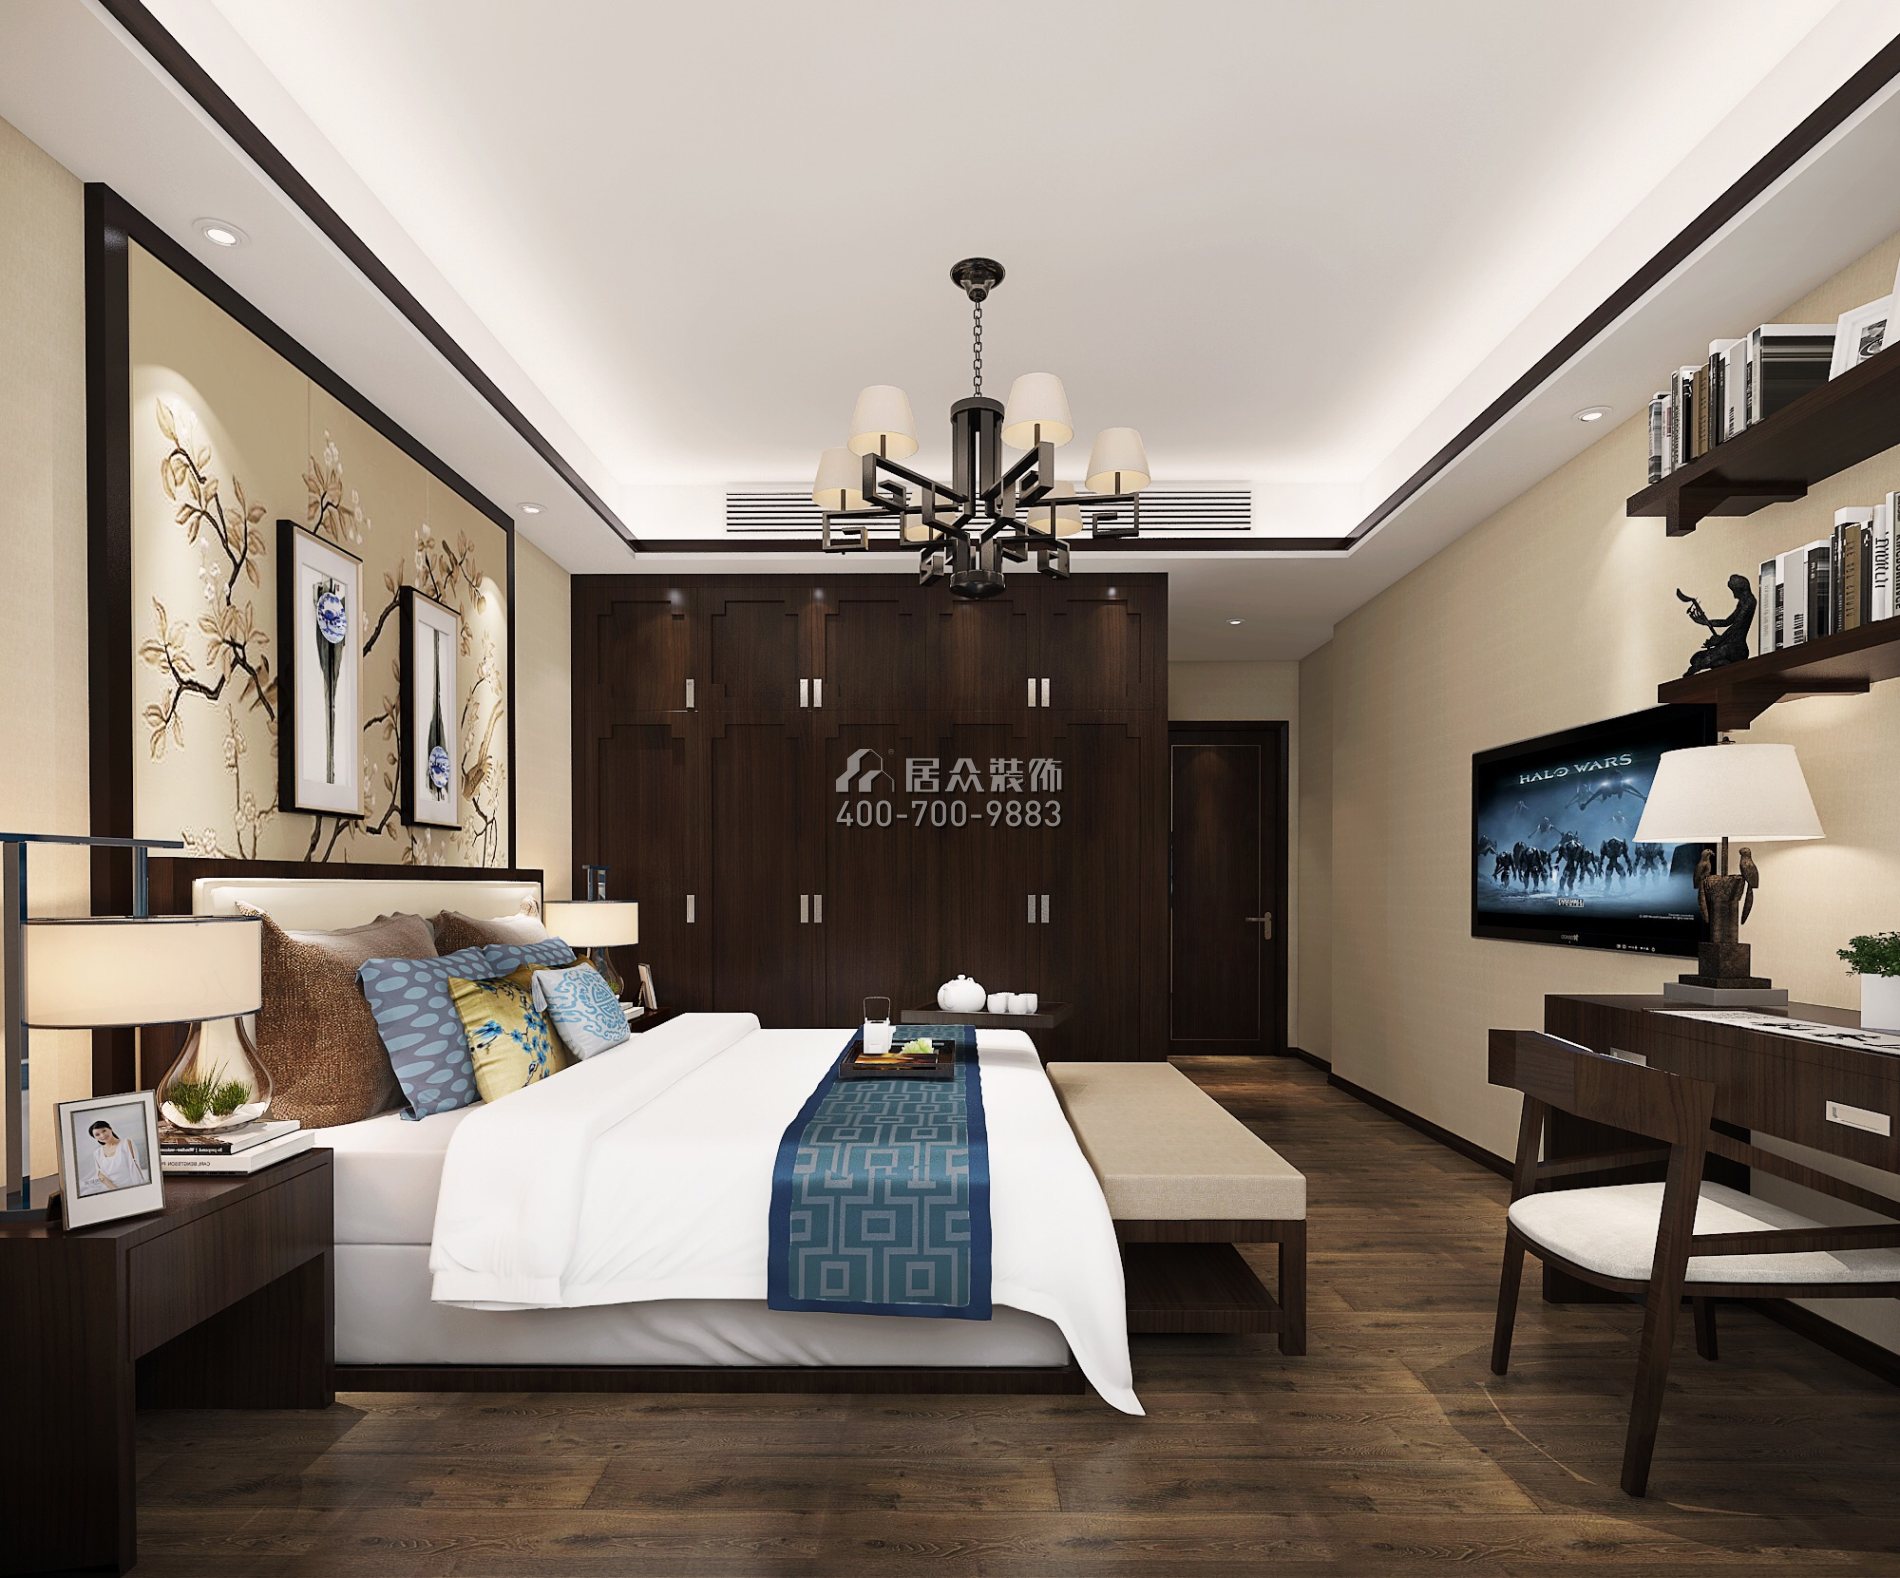 恒大华府140平方米中式风格平层户型卧室装修效果图